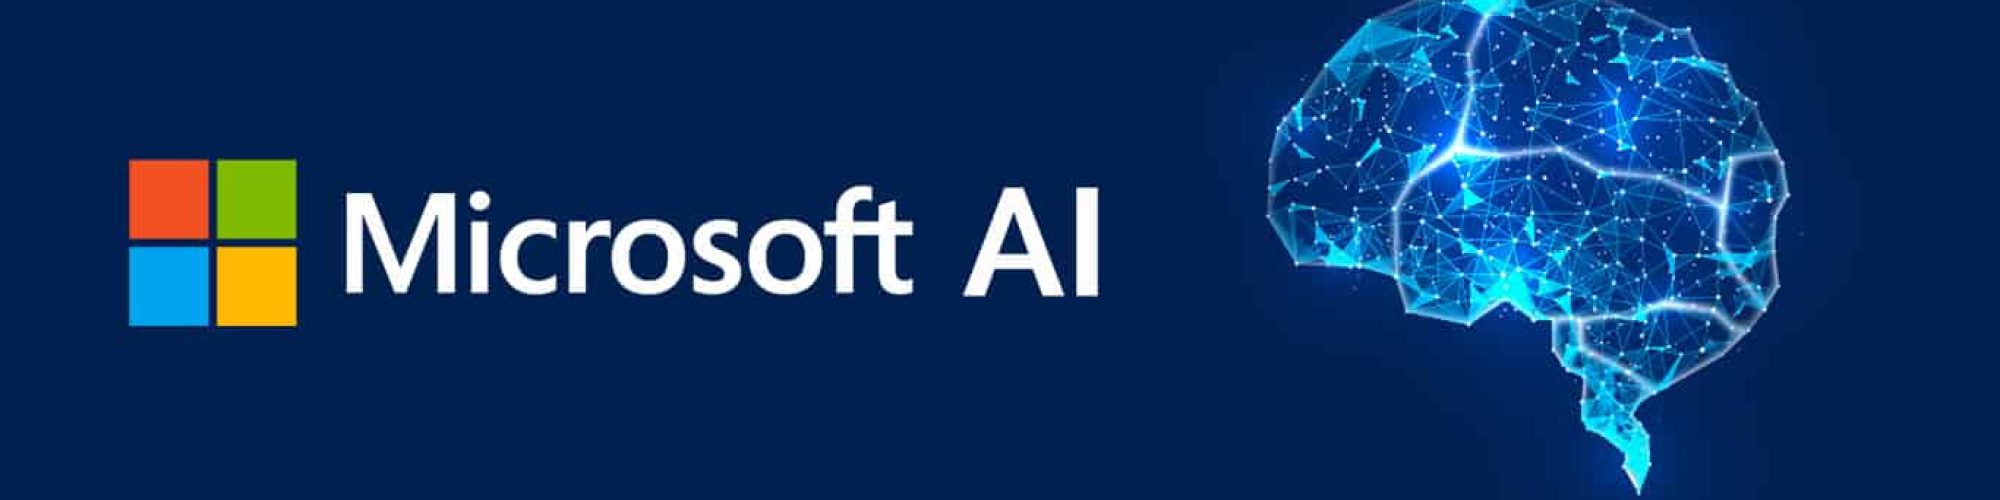 شرکت جدید مایکروسافت در لندن خانه مدل هوش مصنوعی Microsoft AI خواهد بود.